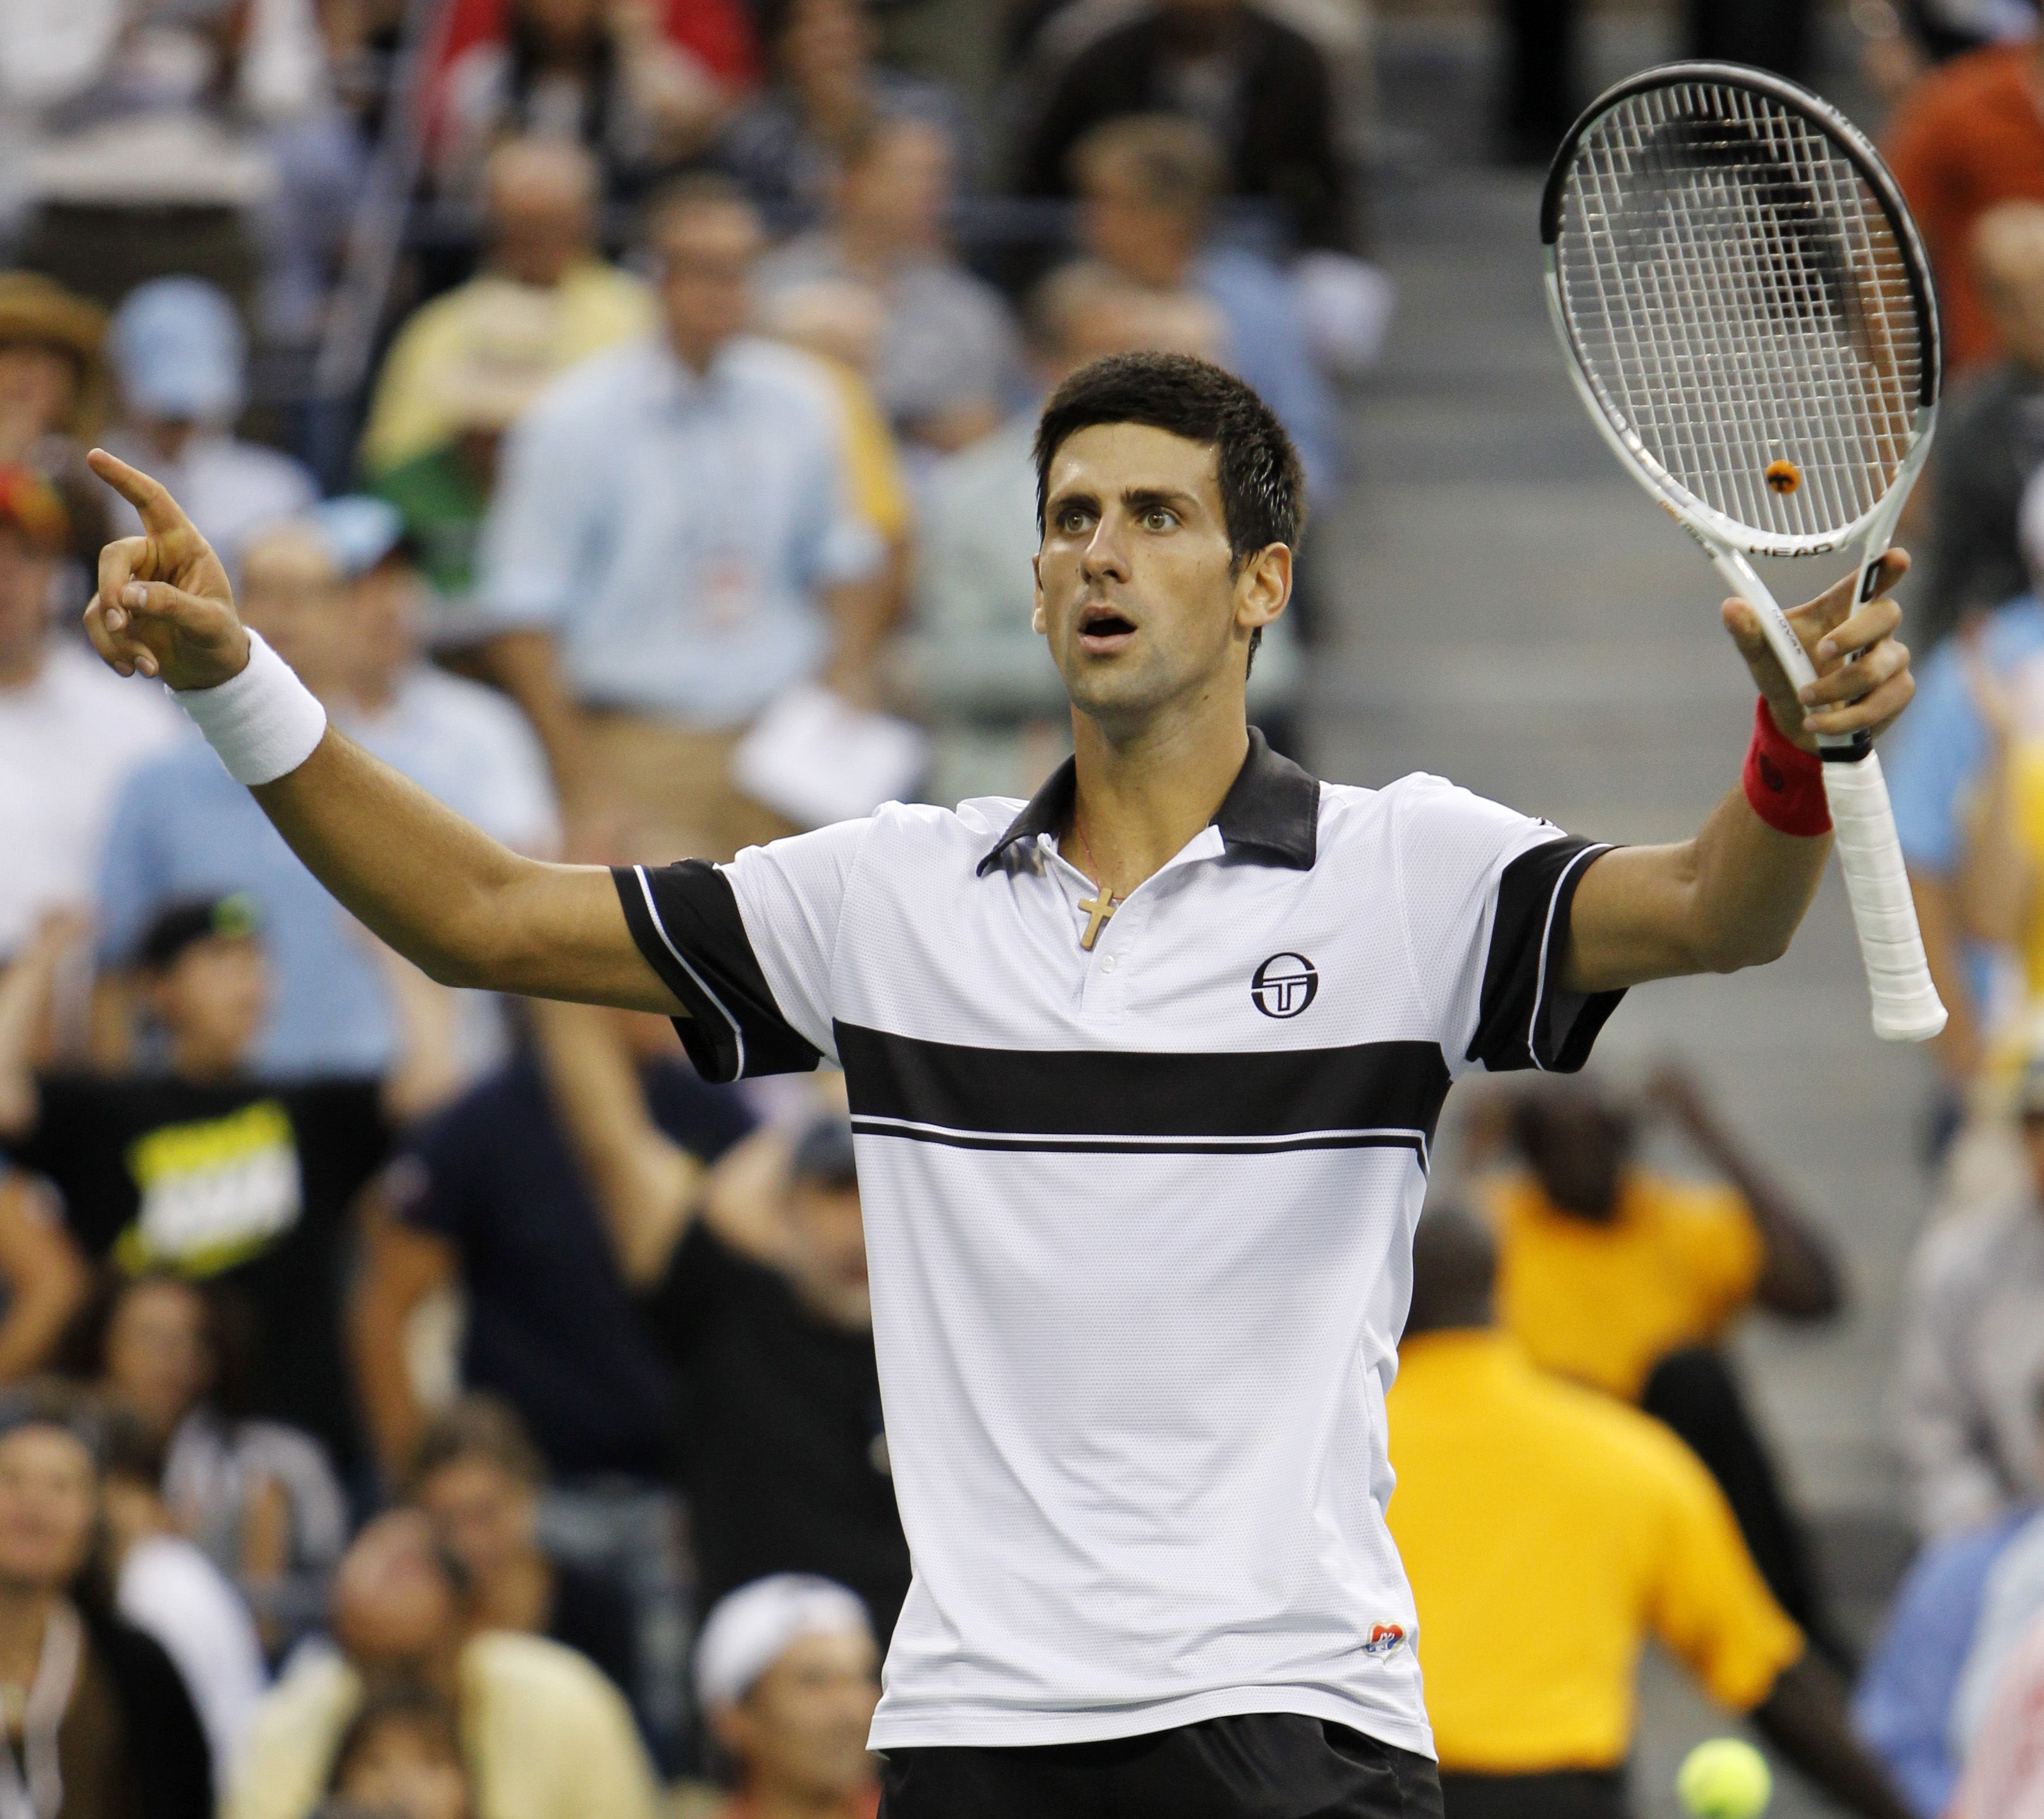 Tennis, Novak Djokovic, US Open, Roger Federer